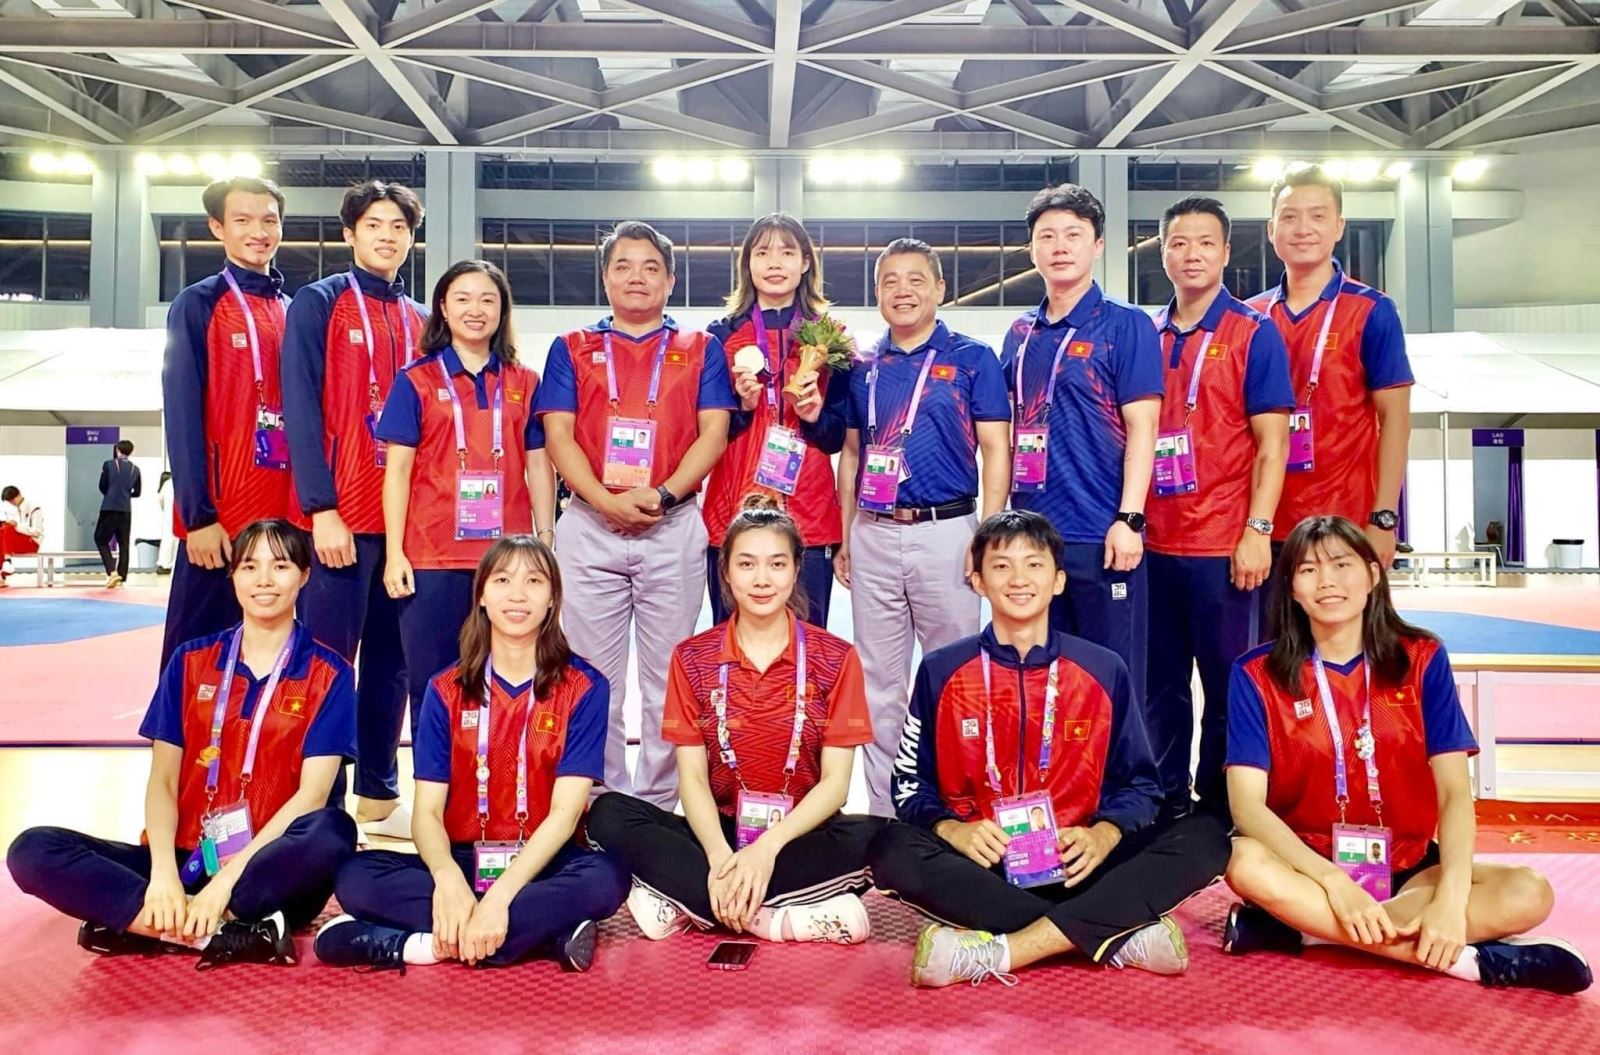 Taekwondo Việt Nam đã hoàn thành tốt nhiệm vụ tại Á vận hội Hàng Châu, riêng Bạc Thị Khiêm “gặt hái quả ngọt” ngay trong lần đầu dự ASIAD.